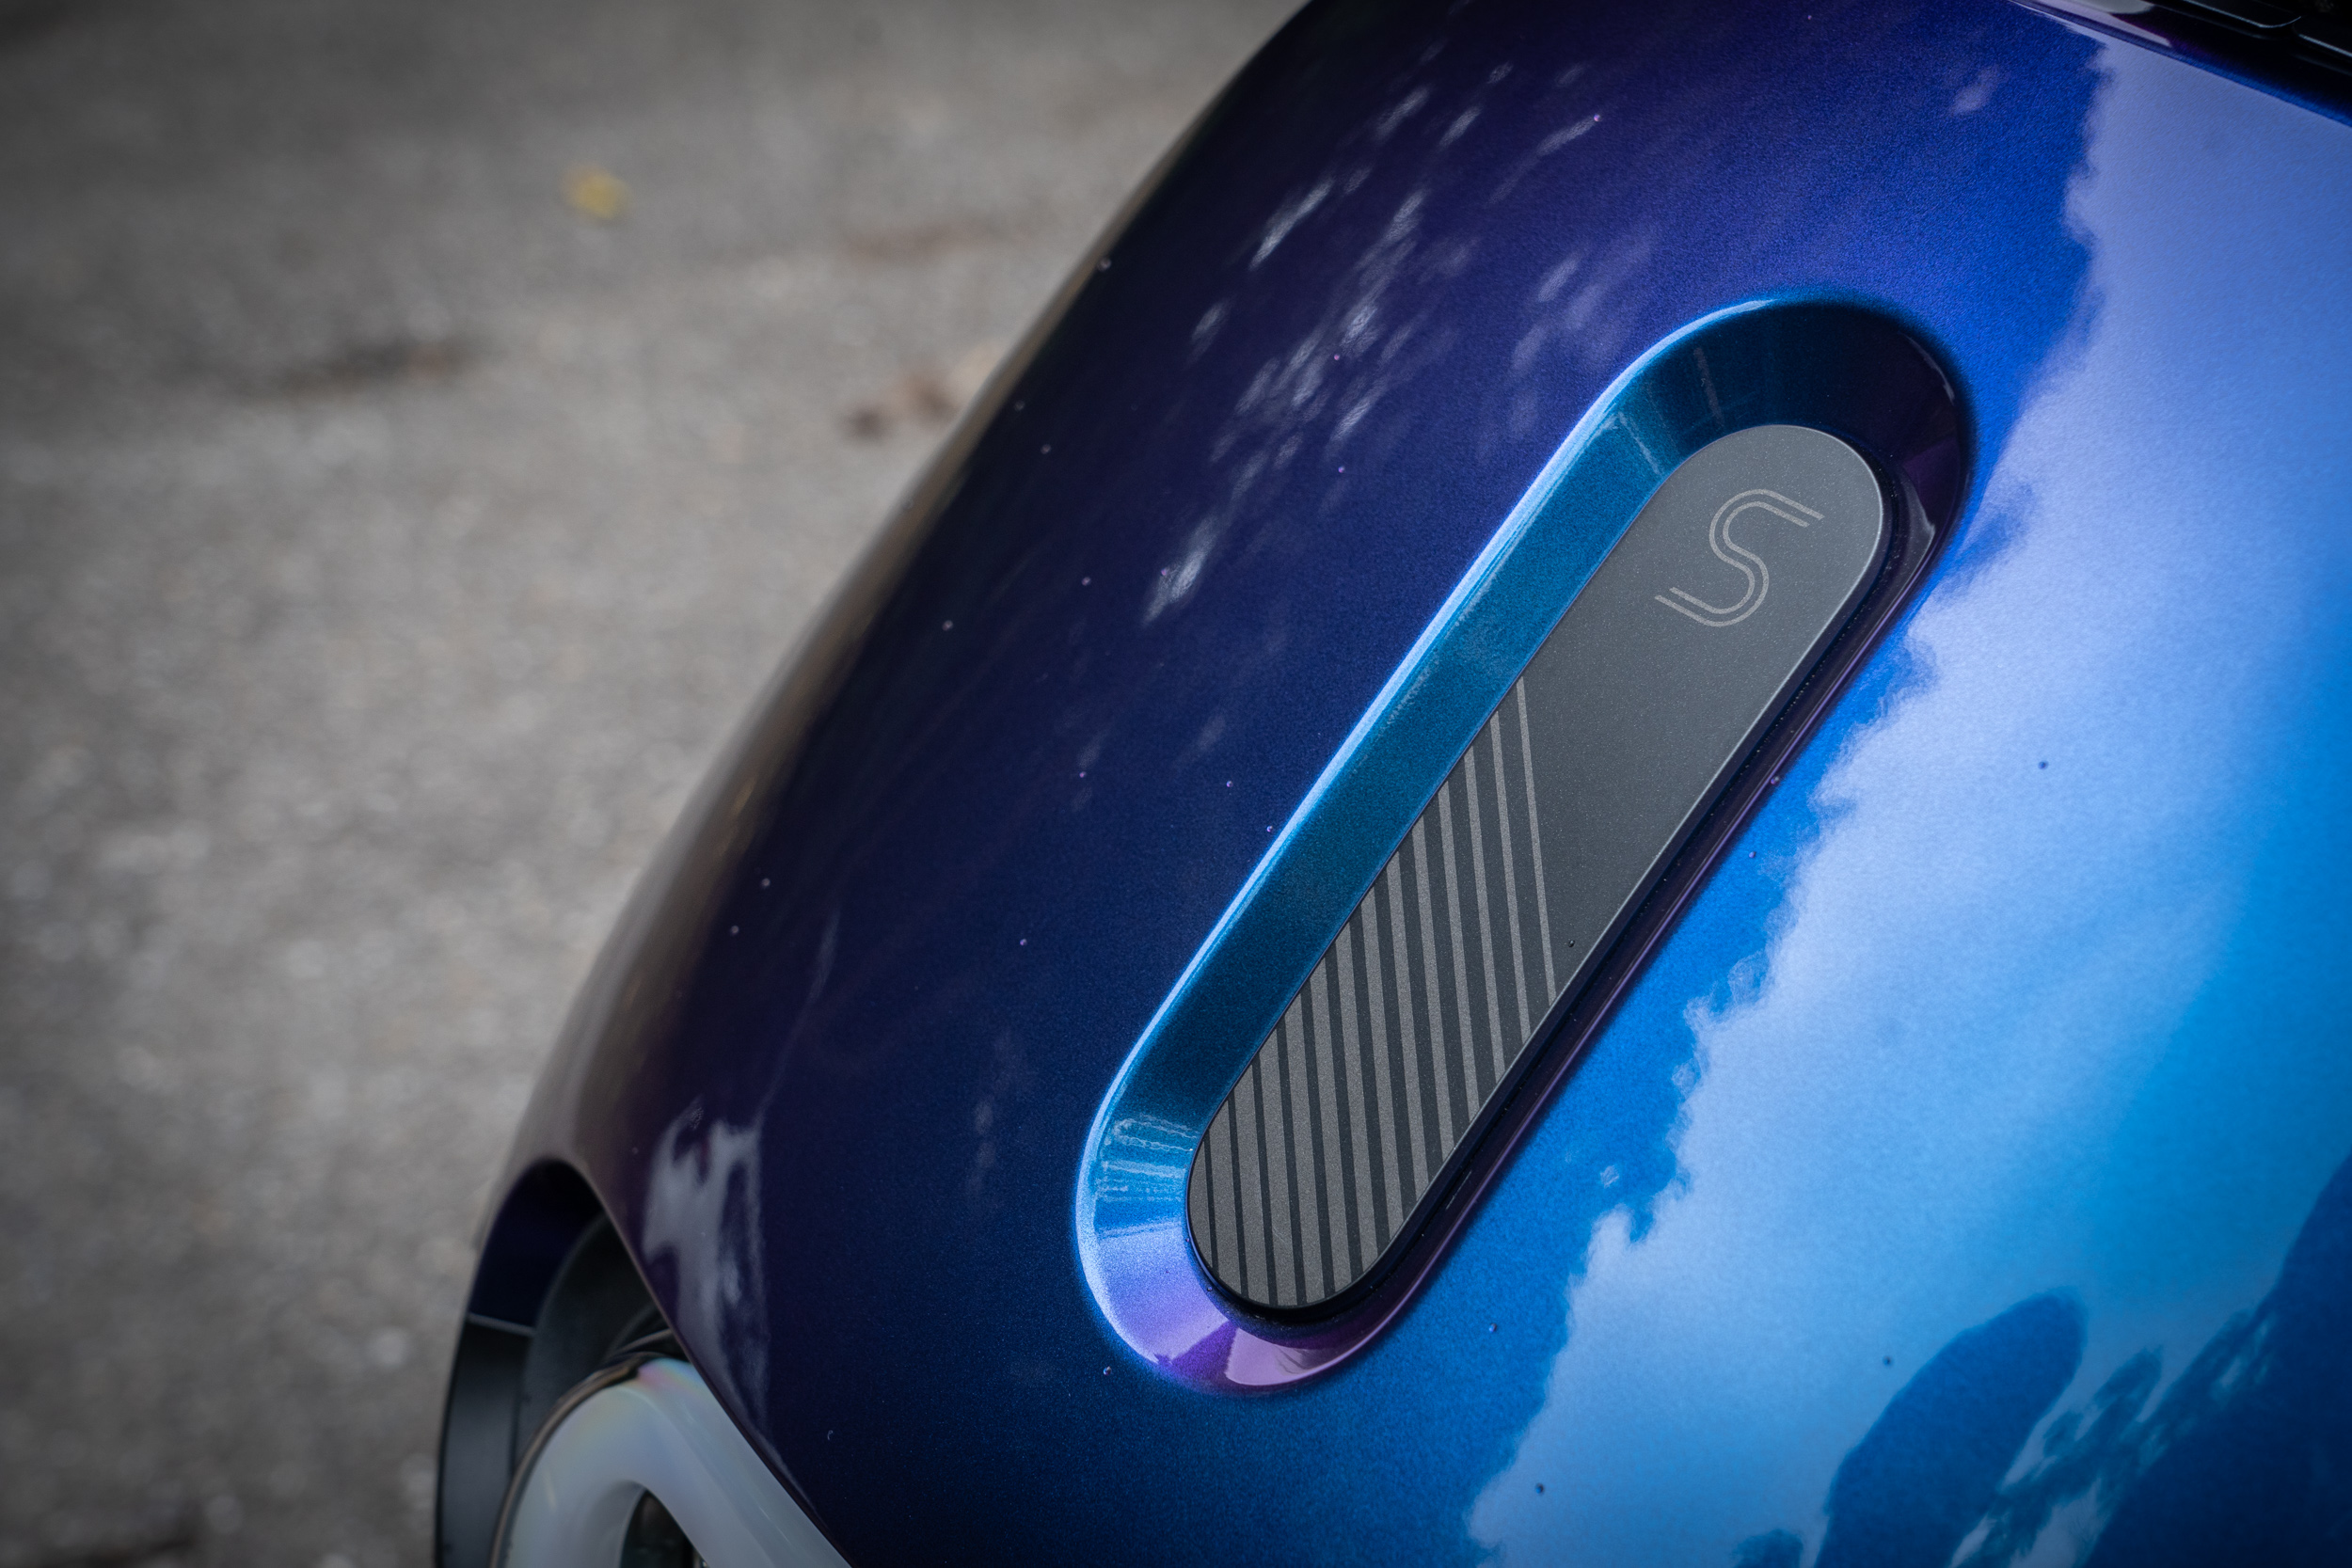 特殊的極光藍車色會依照不同光線反射映照出多層次的光澤。